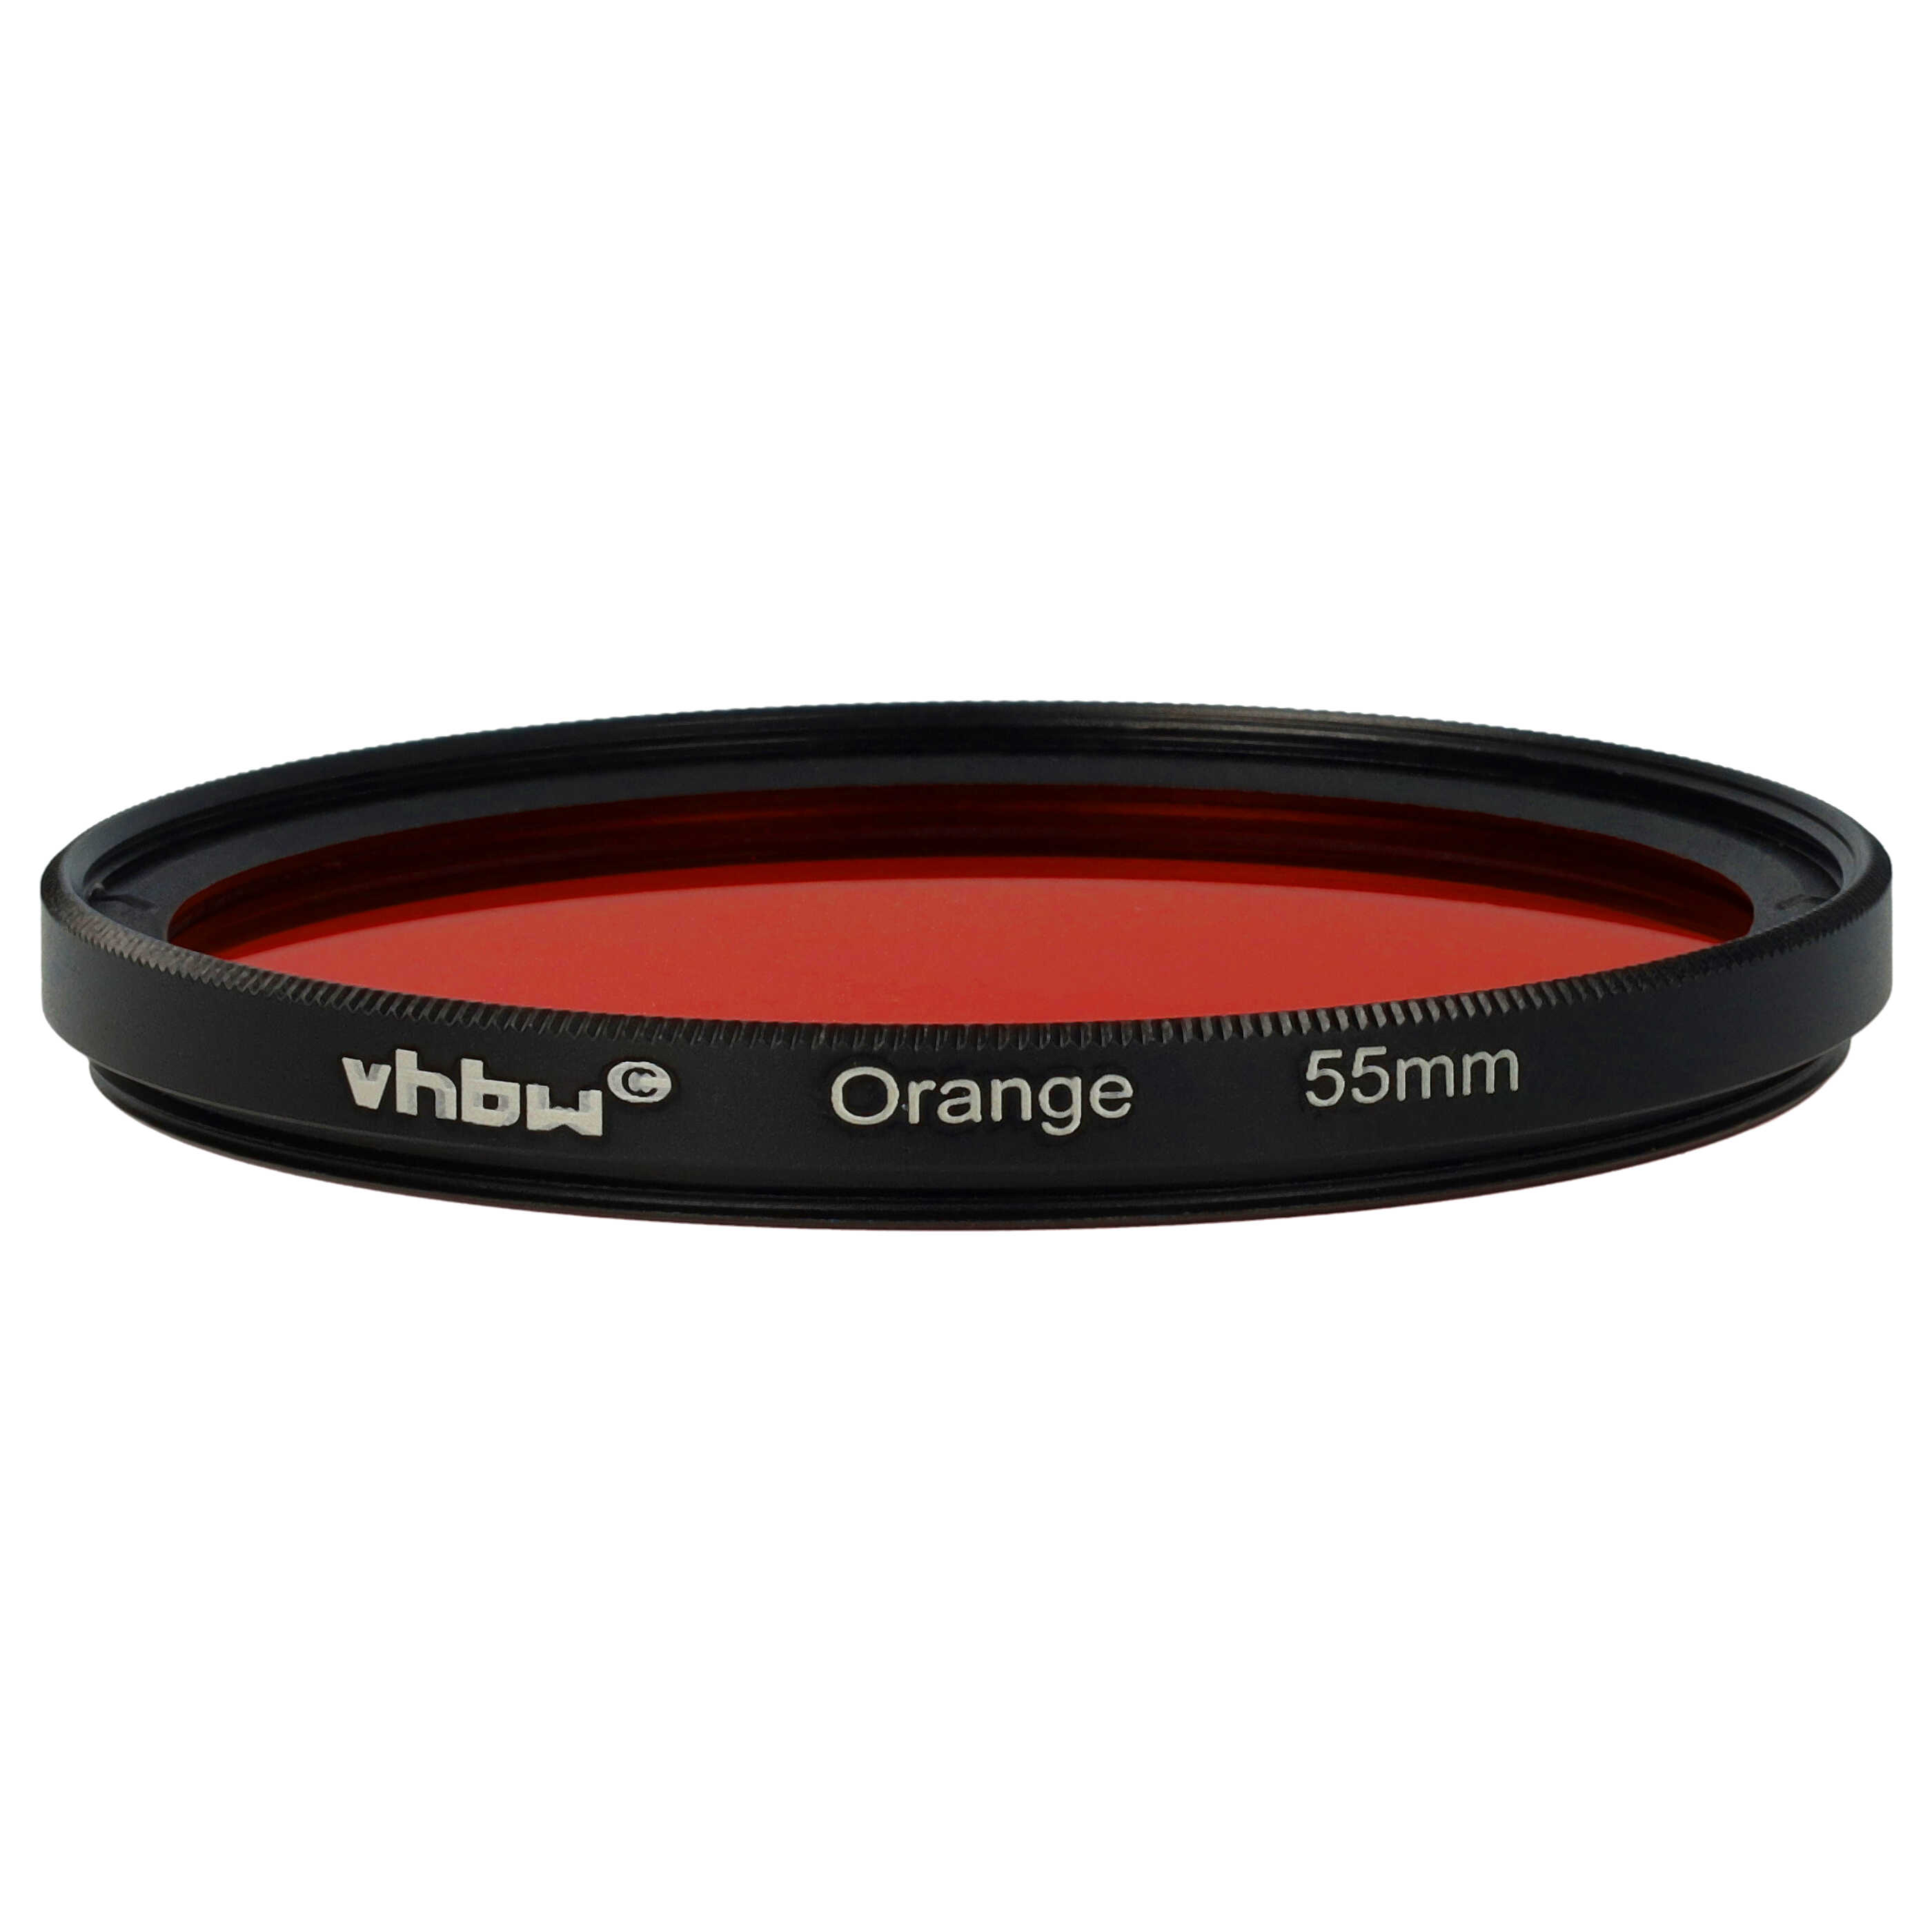 Filtro colorato per obiettivi fotocamera con filettatura da 55 mm - filtro arancione